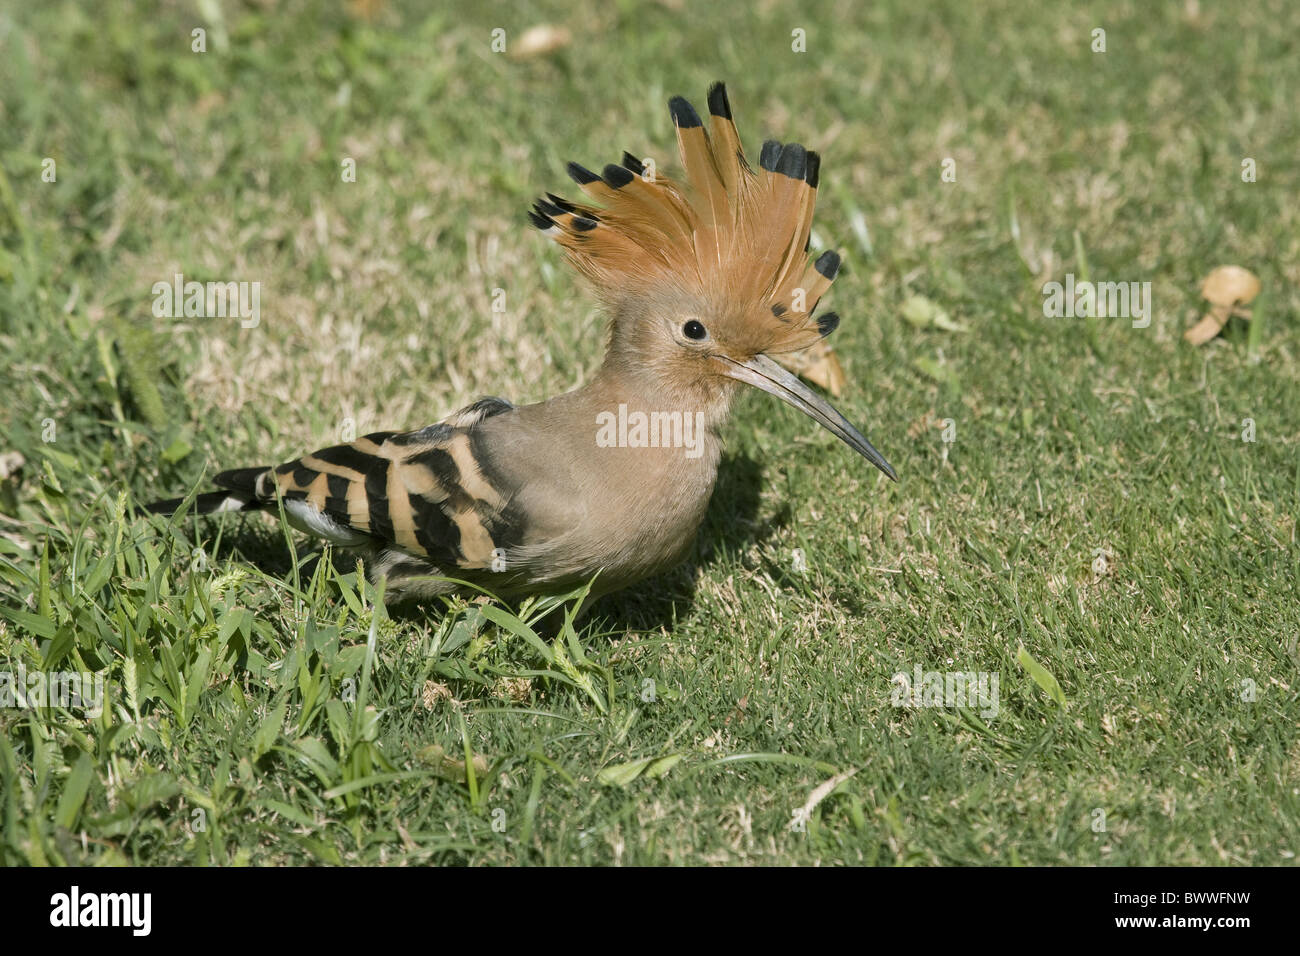 Hoopoe (Upupa epops) adult, crest raised, feeding on lawn, Egypt, january Stock Photo